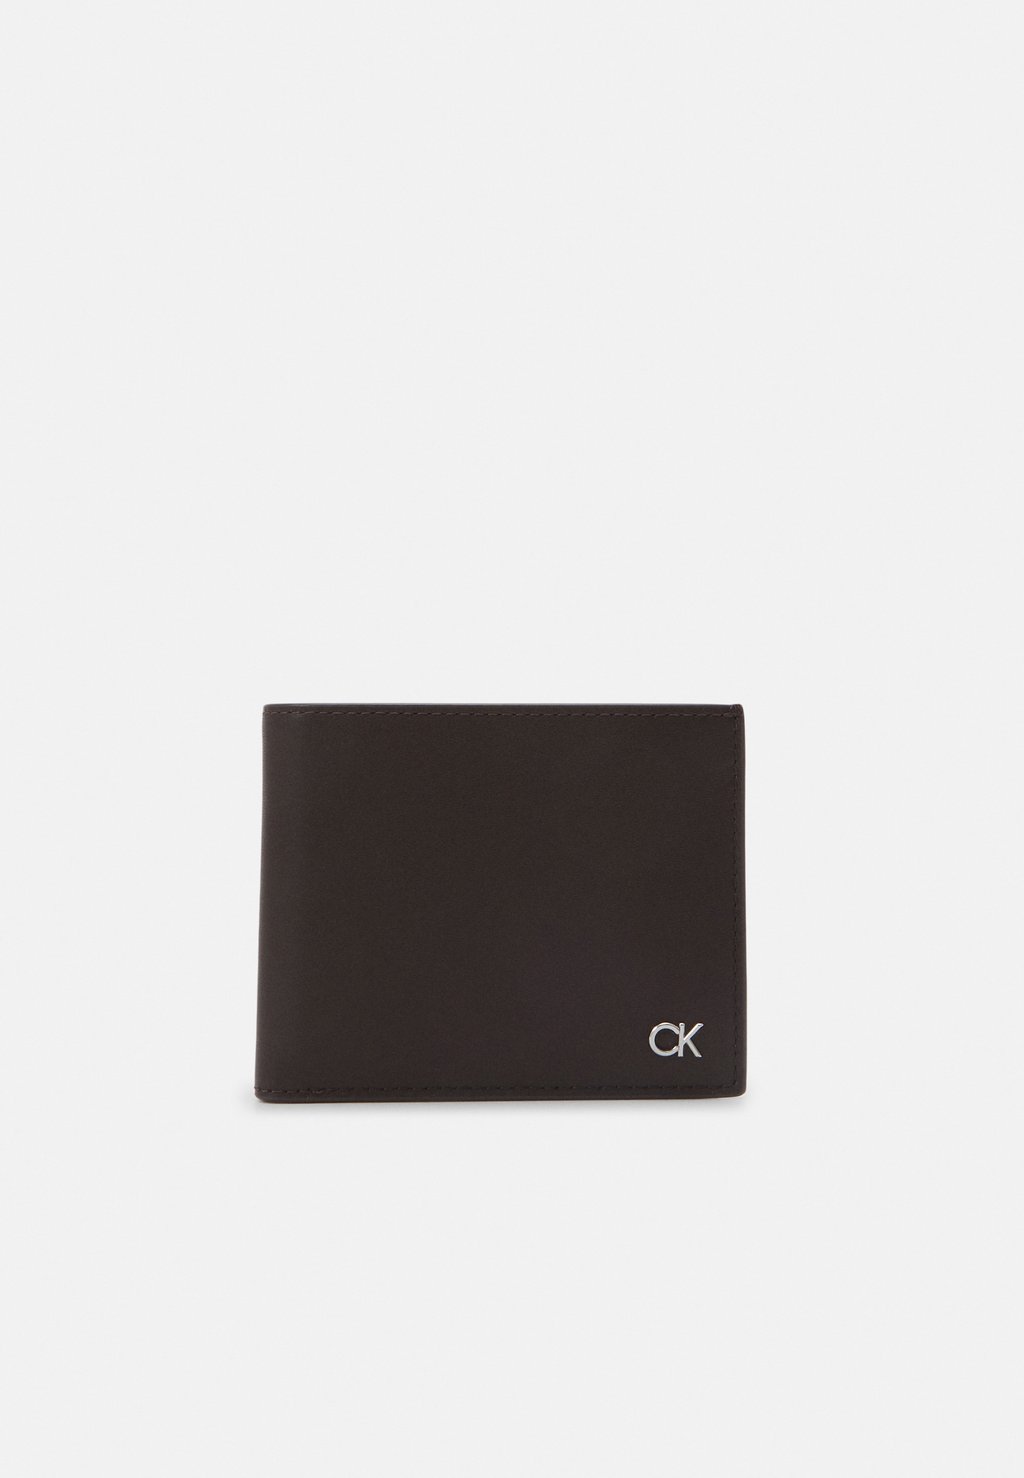 Кошелек BIFOLD COIN Calvin Klein, цвет dark brown